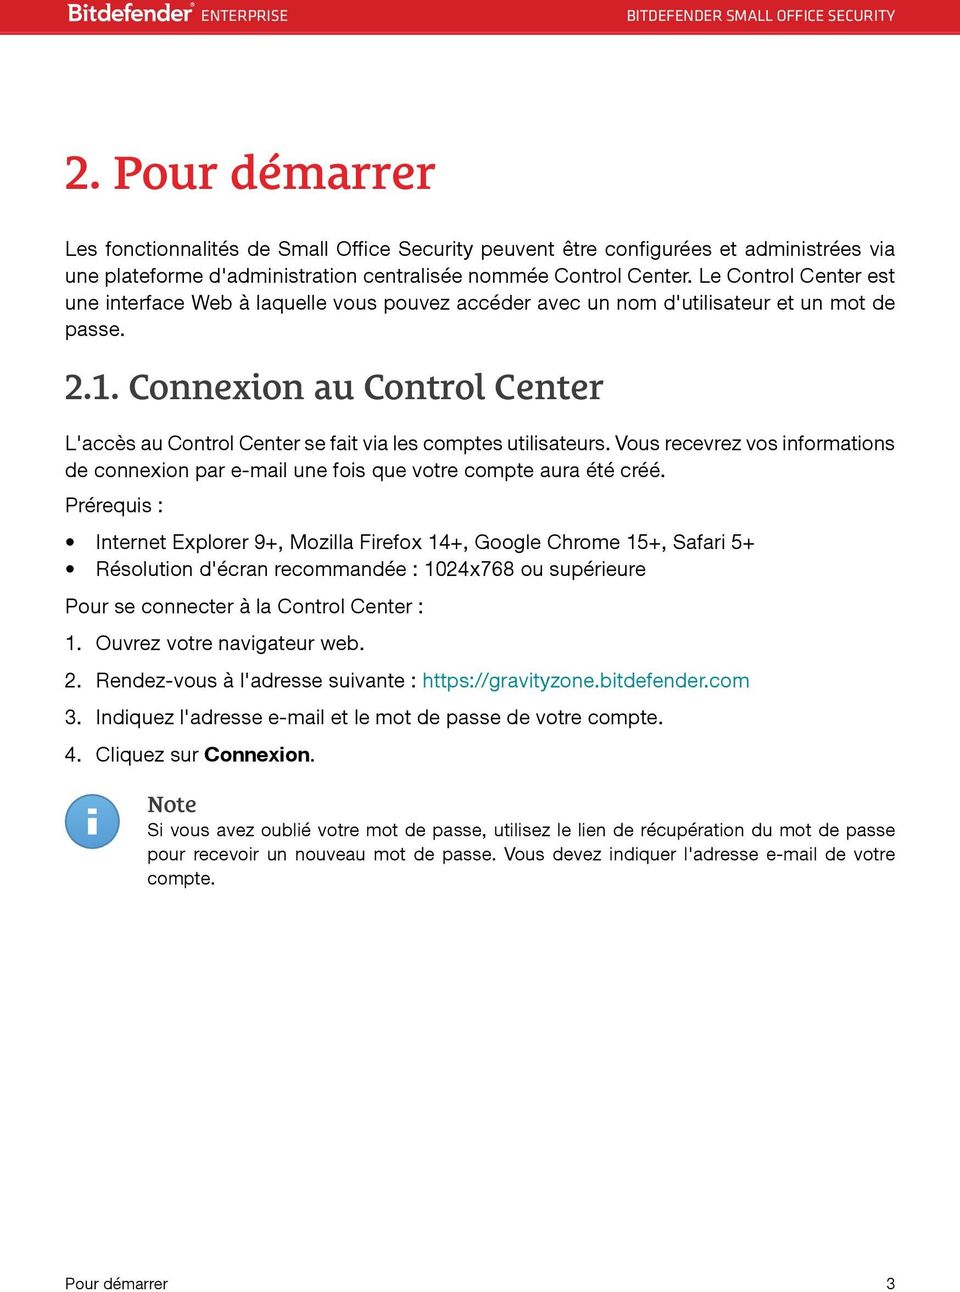 Connexion au Control Center L'accès au Control Center se fait via les comptes utilisateurs. Vous recevrez vos informations de connexion par e-mail une fois que votre compte aura été créé.